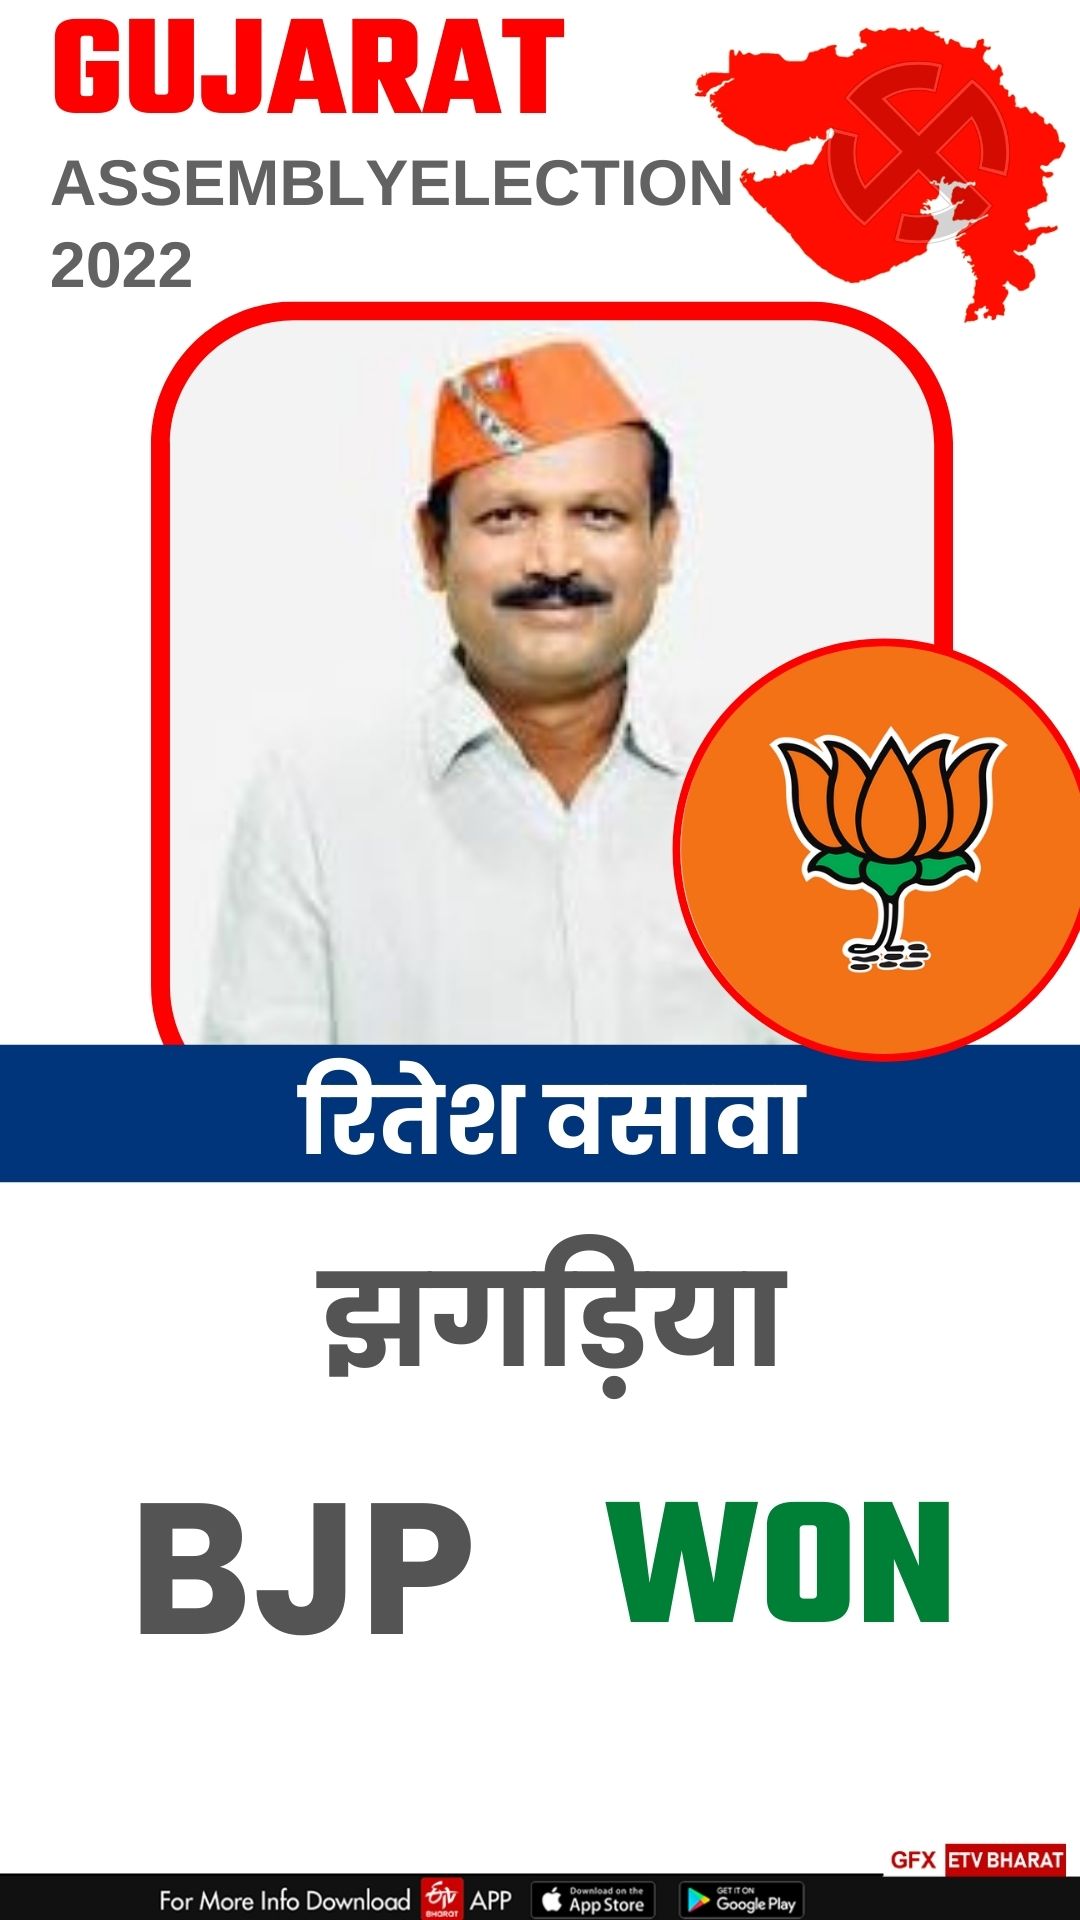 BJP candidate Ritesh Kumar Vasava won from Jhagadia seat